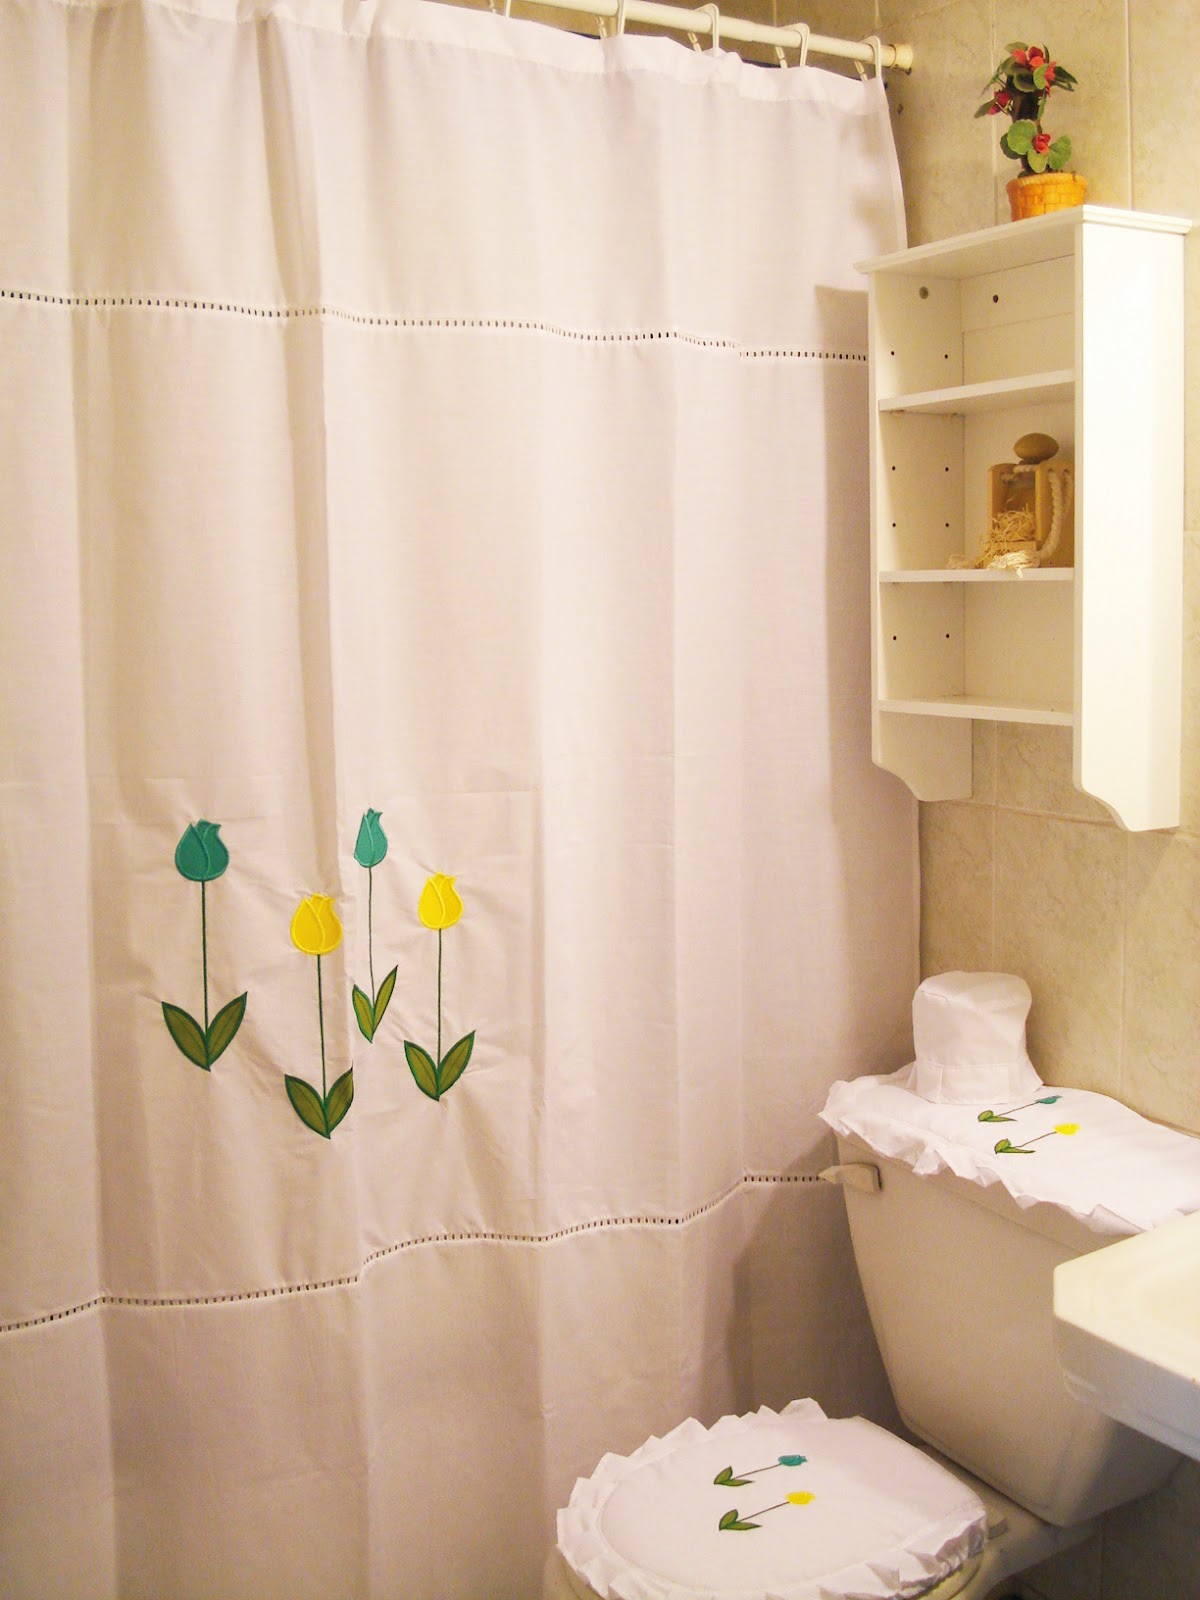 RVA Diseños | Cortinas y Set de Baño: Set de baño - Bordado Tulipán